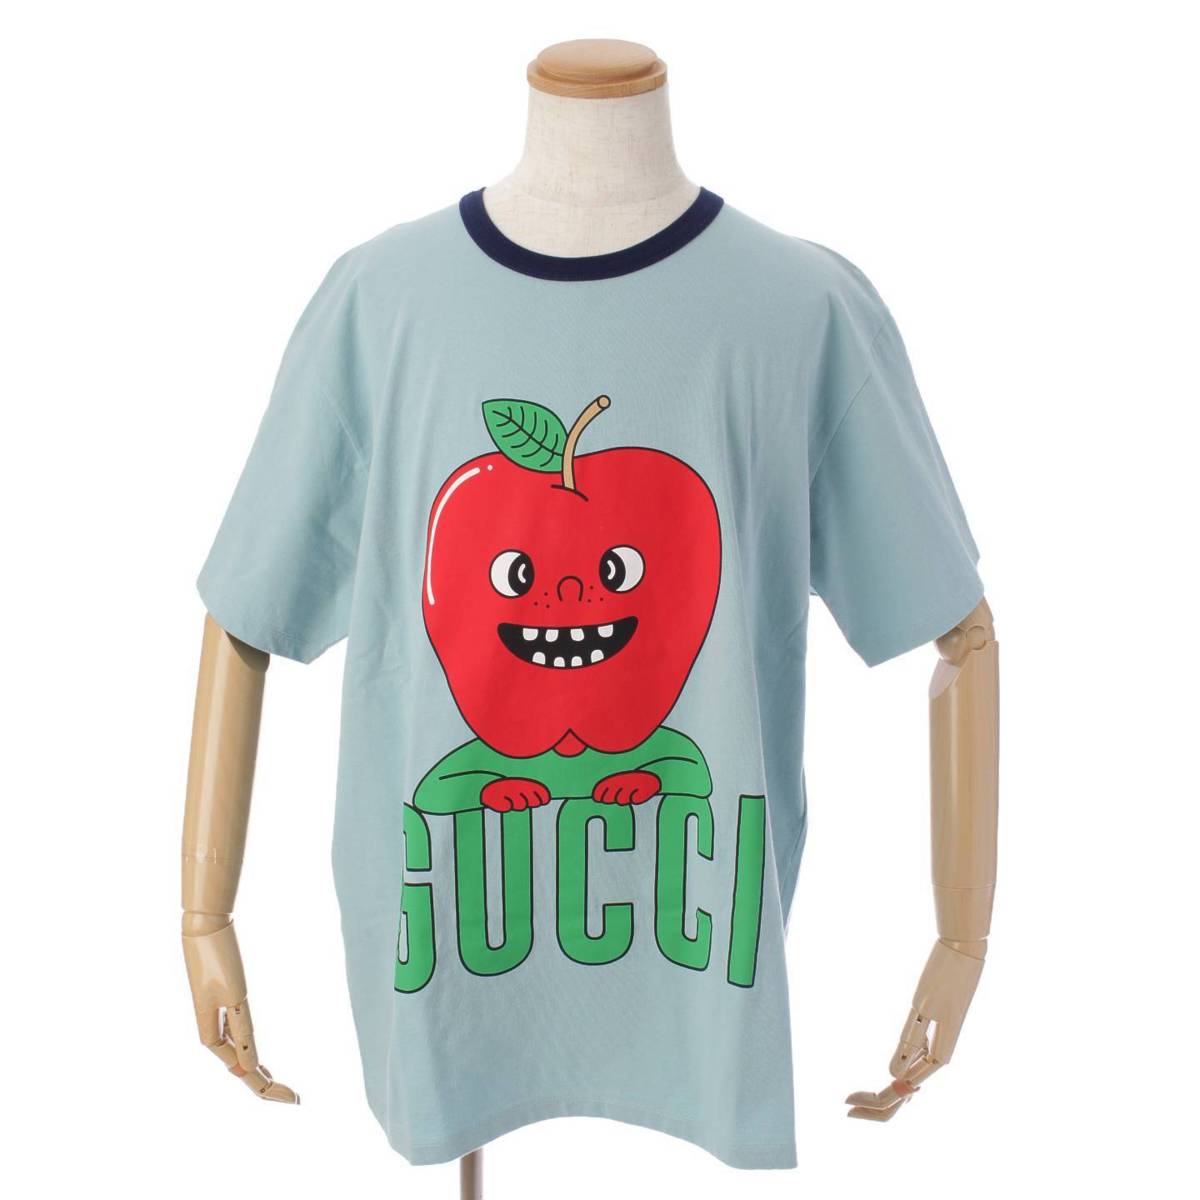 グッチ(Gucci) アップルプリント オーバーサイズ Tシャツ トップス ...